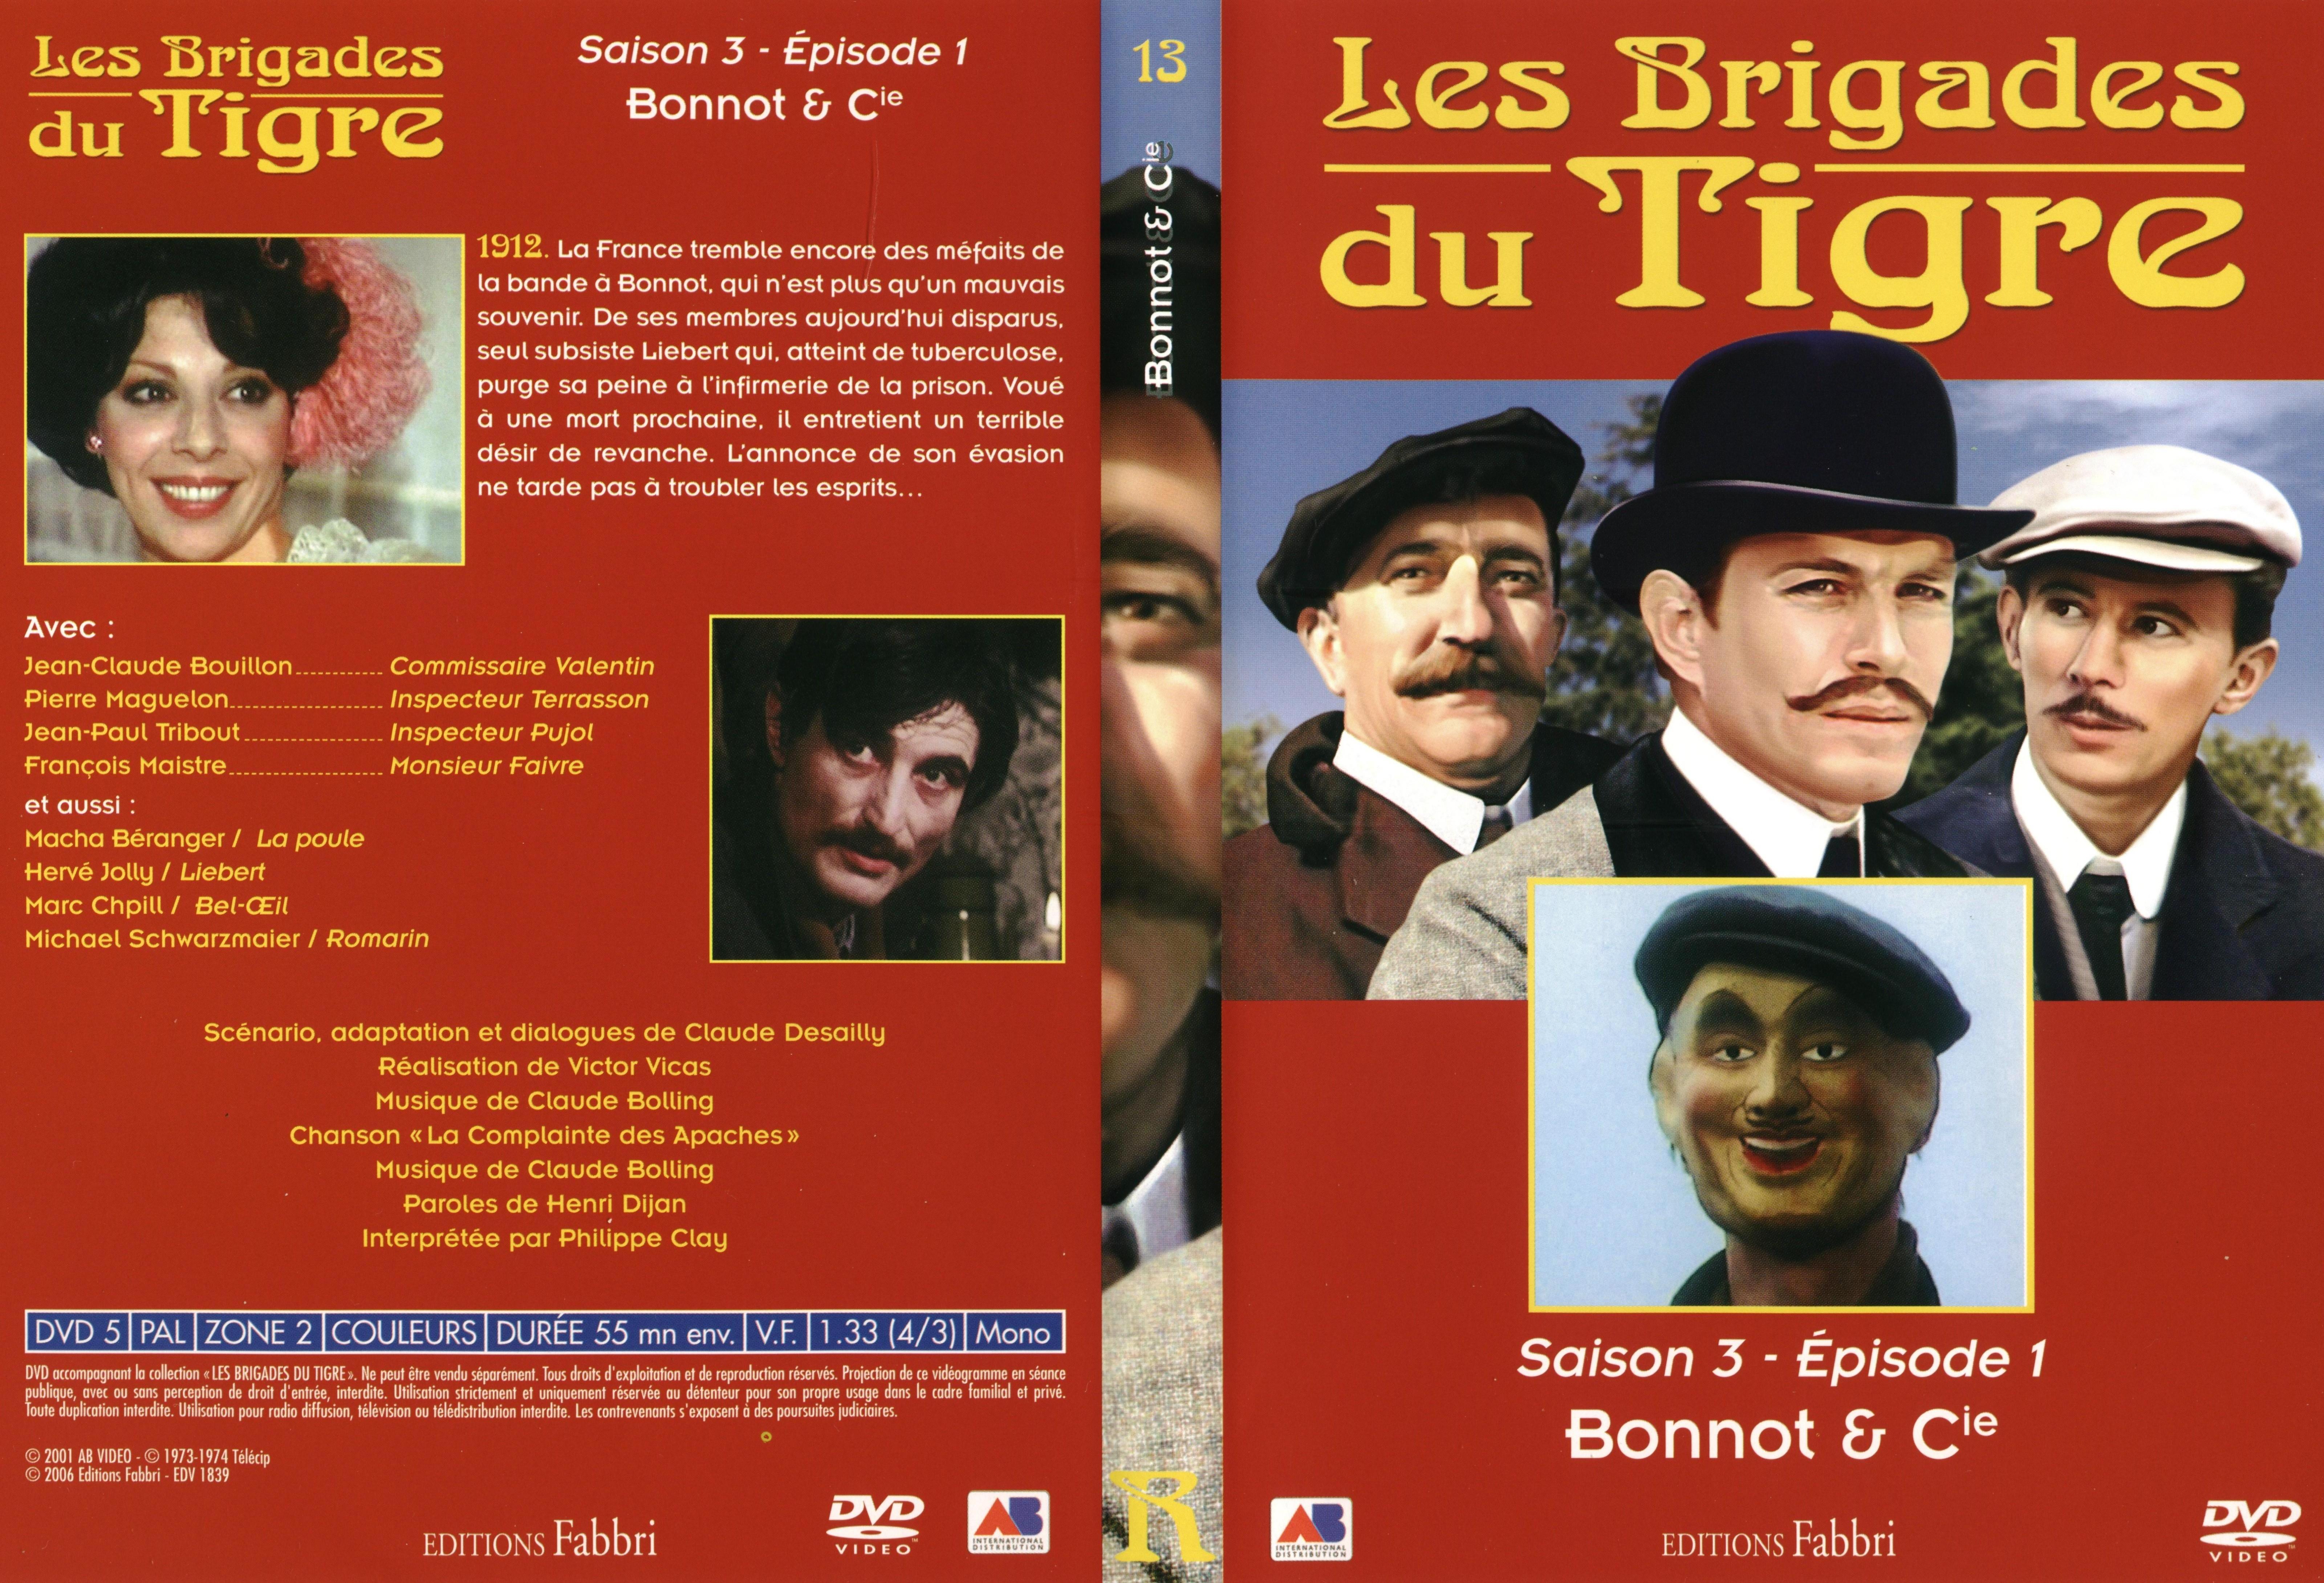 Jaquette DVD Les brigades du tigre saison 3 pisode 1